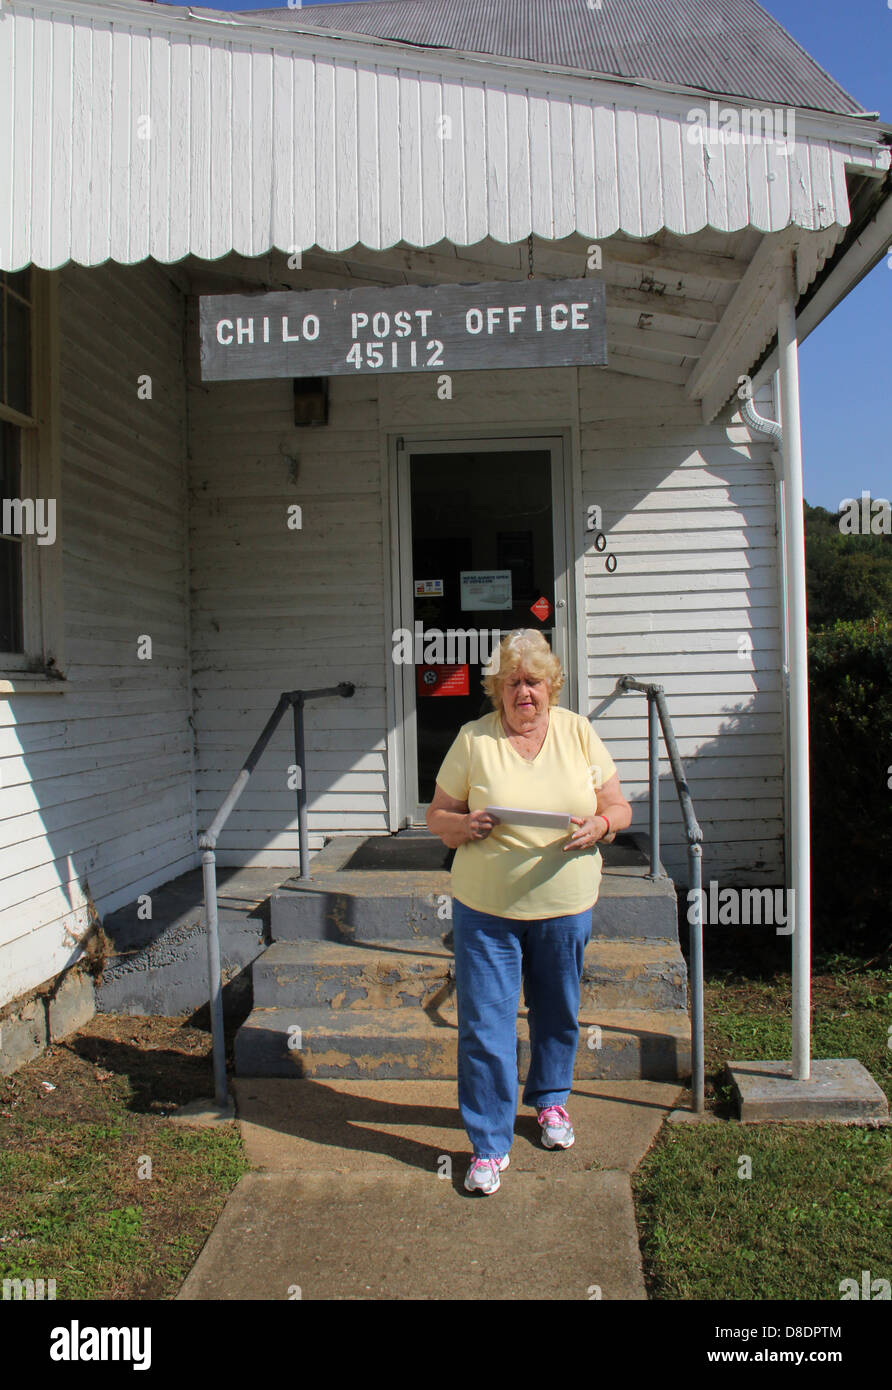 Ciudad pequeña oficina de correos Chilo Ohio satisfacer socializar hablar rural reunión cerca de cierre Foto de stock